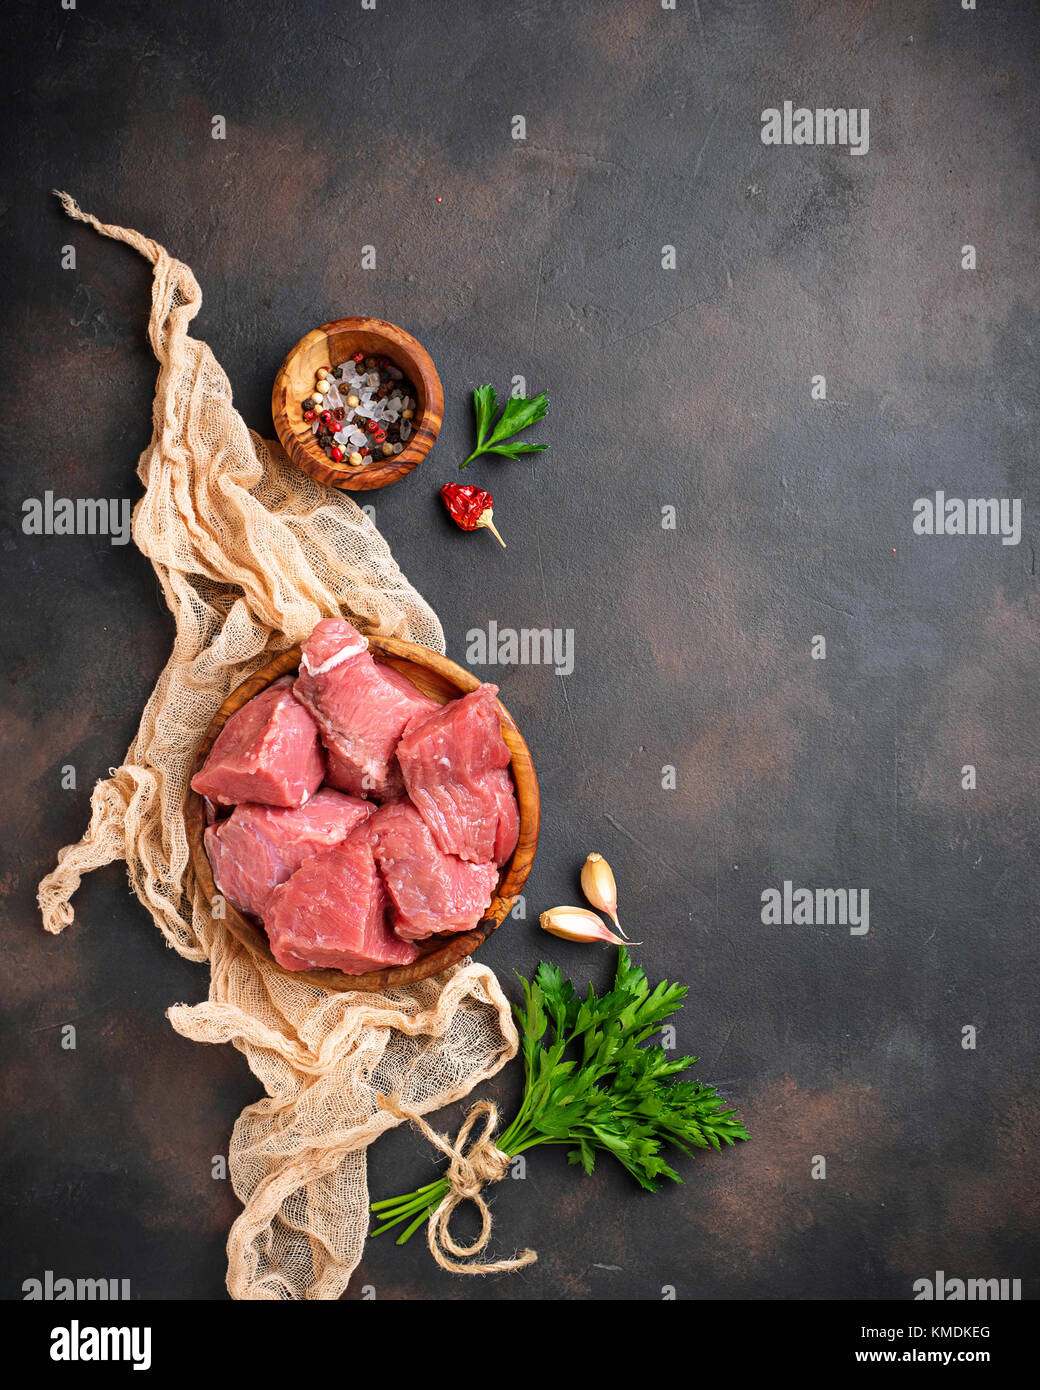 Materie carne tritata con spezie su sfondo arrugginito Foto Stock